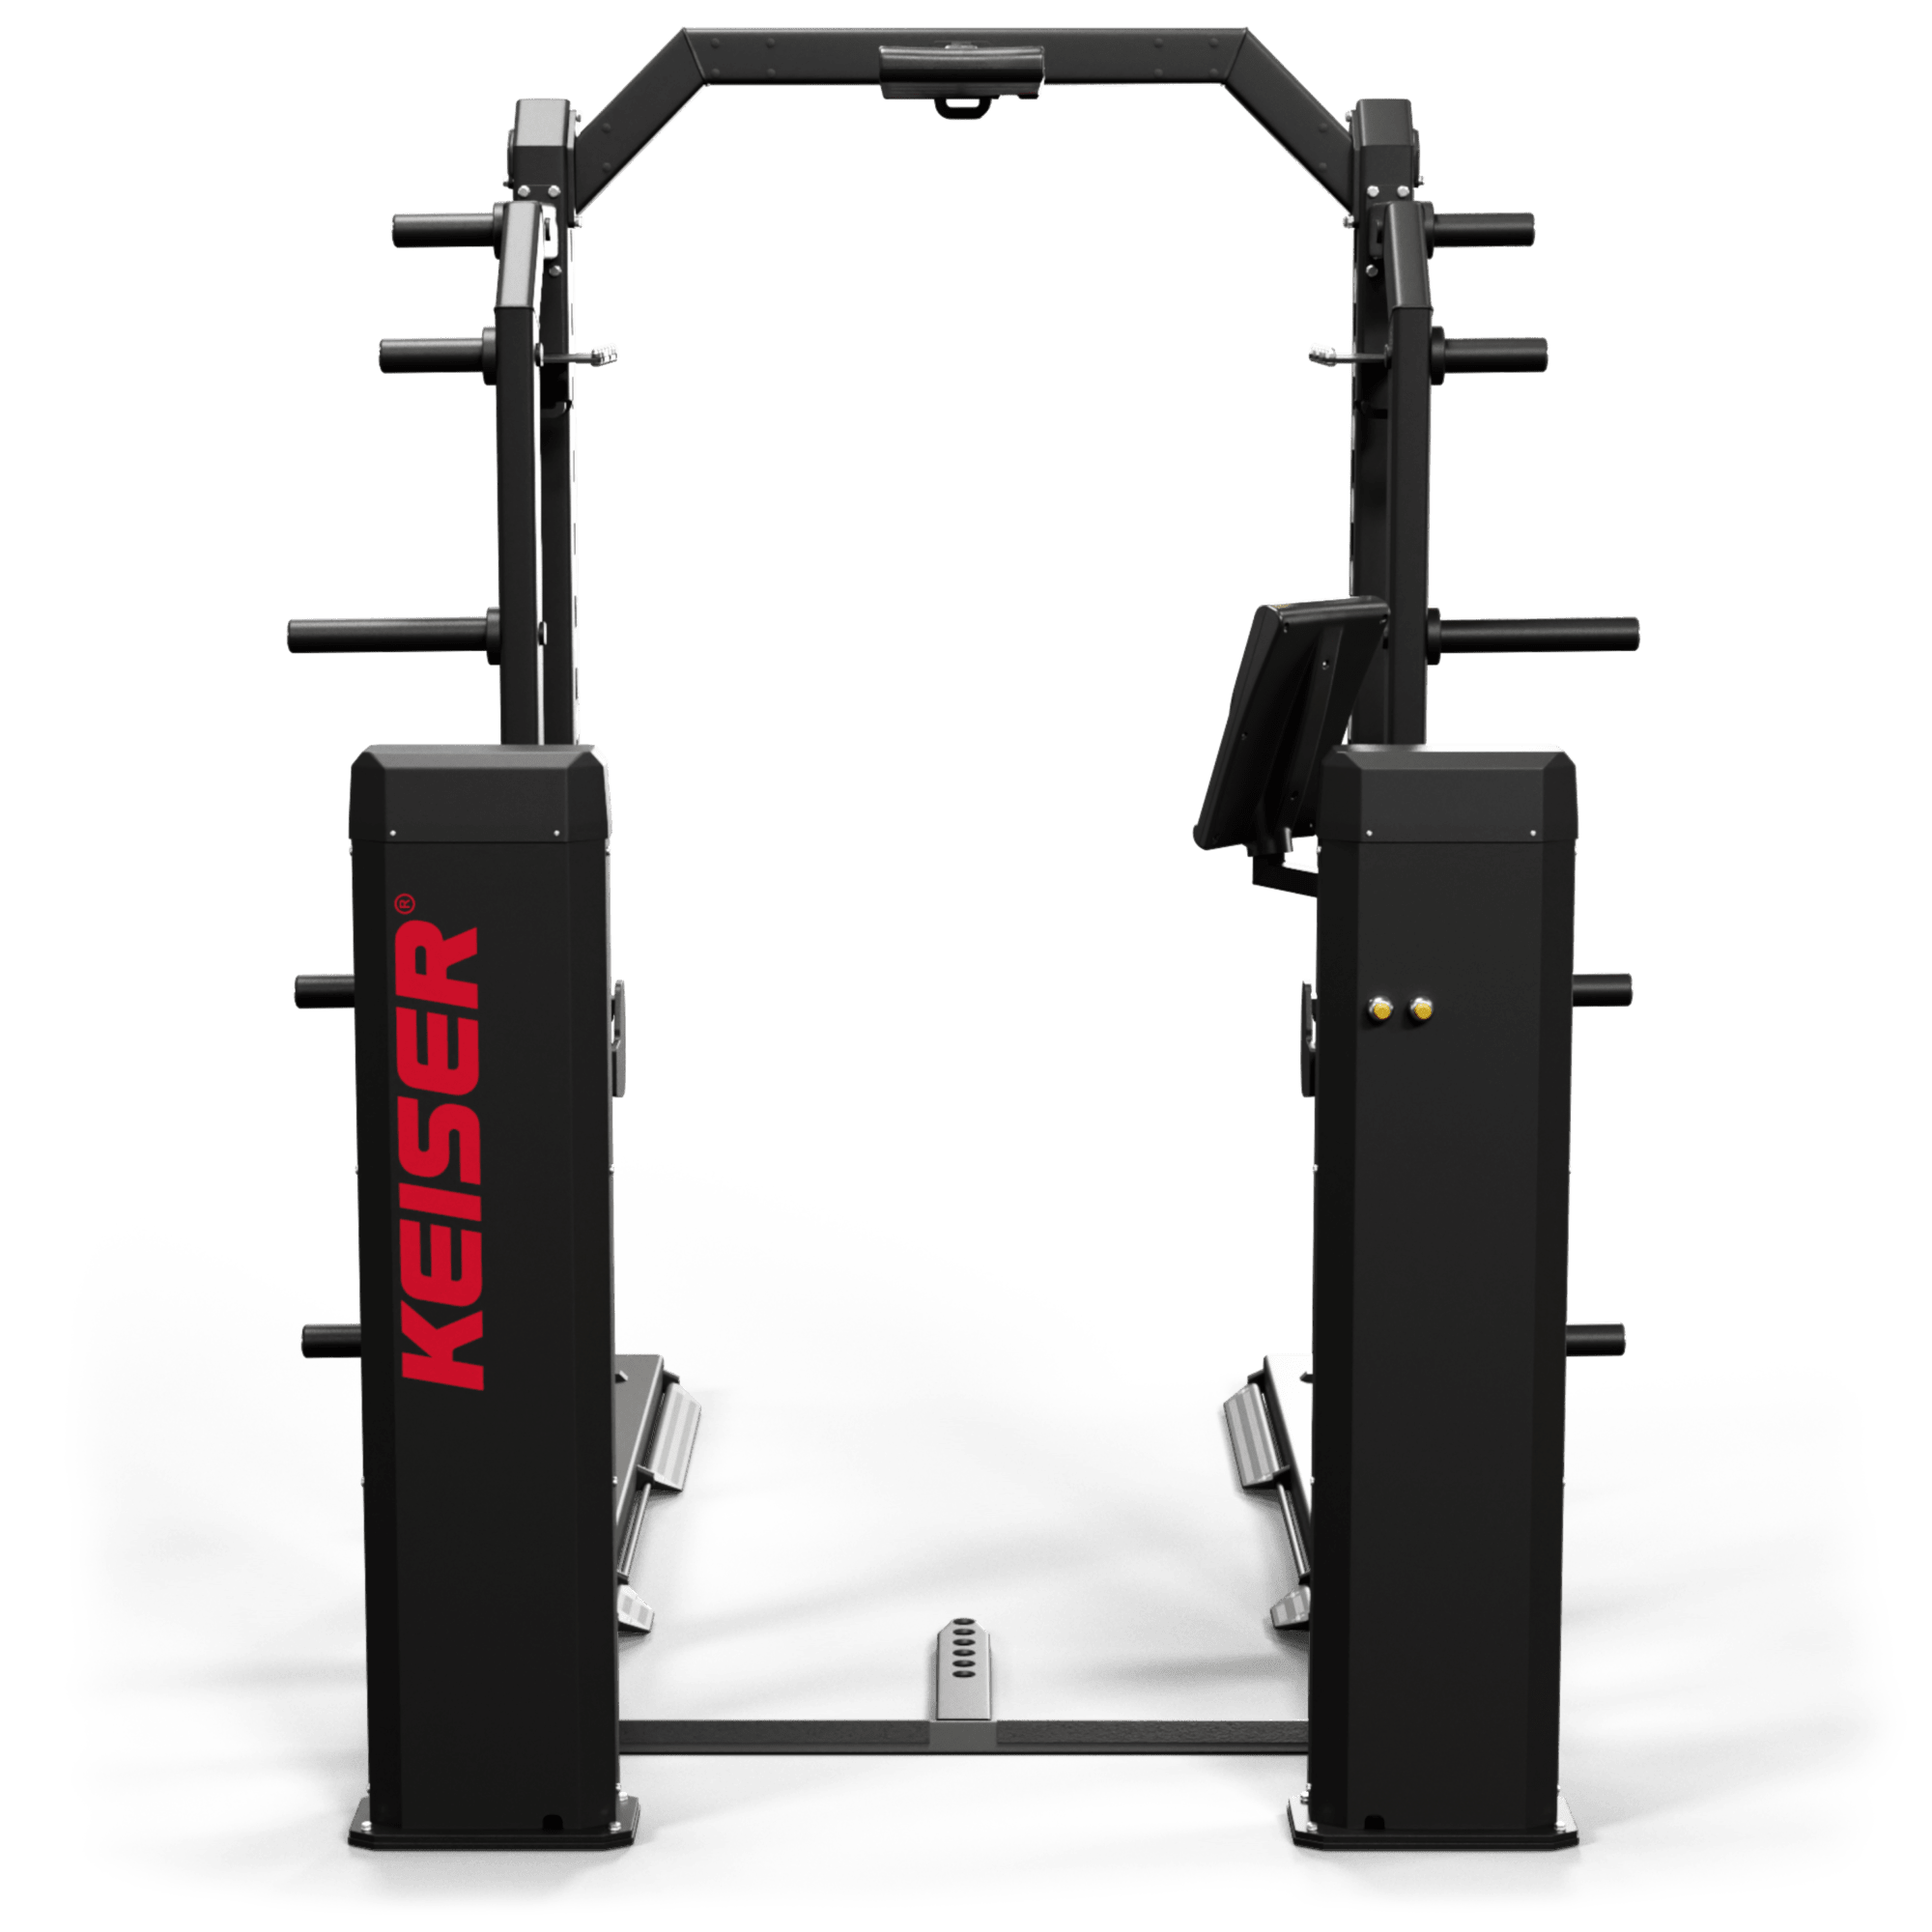 Keiser 9' Half Rack Long Base met foot pedals - Power Display